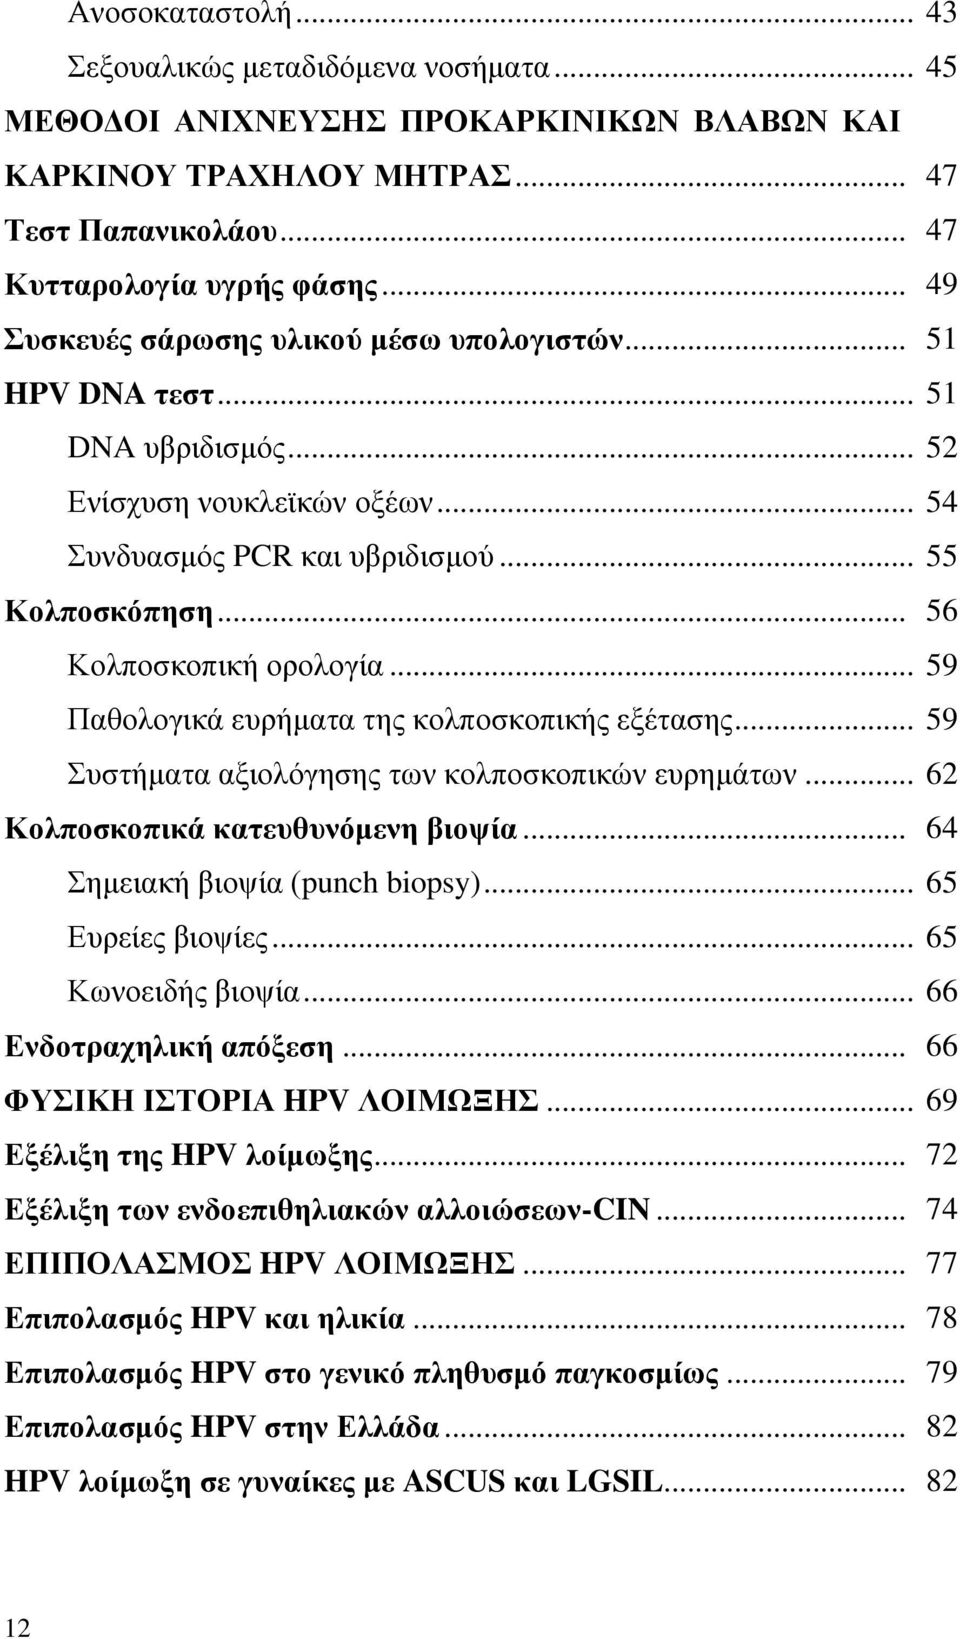 .. 59 Παθολογικά ευρήματα της κολποσκοπικής εξέτασης... 59 Συστήματα αξιολόγησης των κολποσκοπικών ευρημάτων... 62 Κολποσκοπικά κατευθυνόμενη βιοψία... 64 Σημειακή βιοψία (punch biopsy).